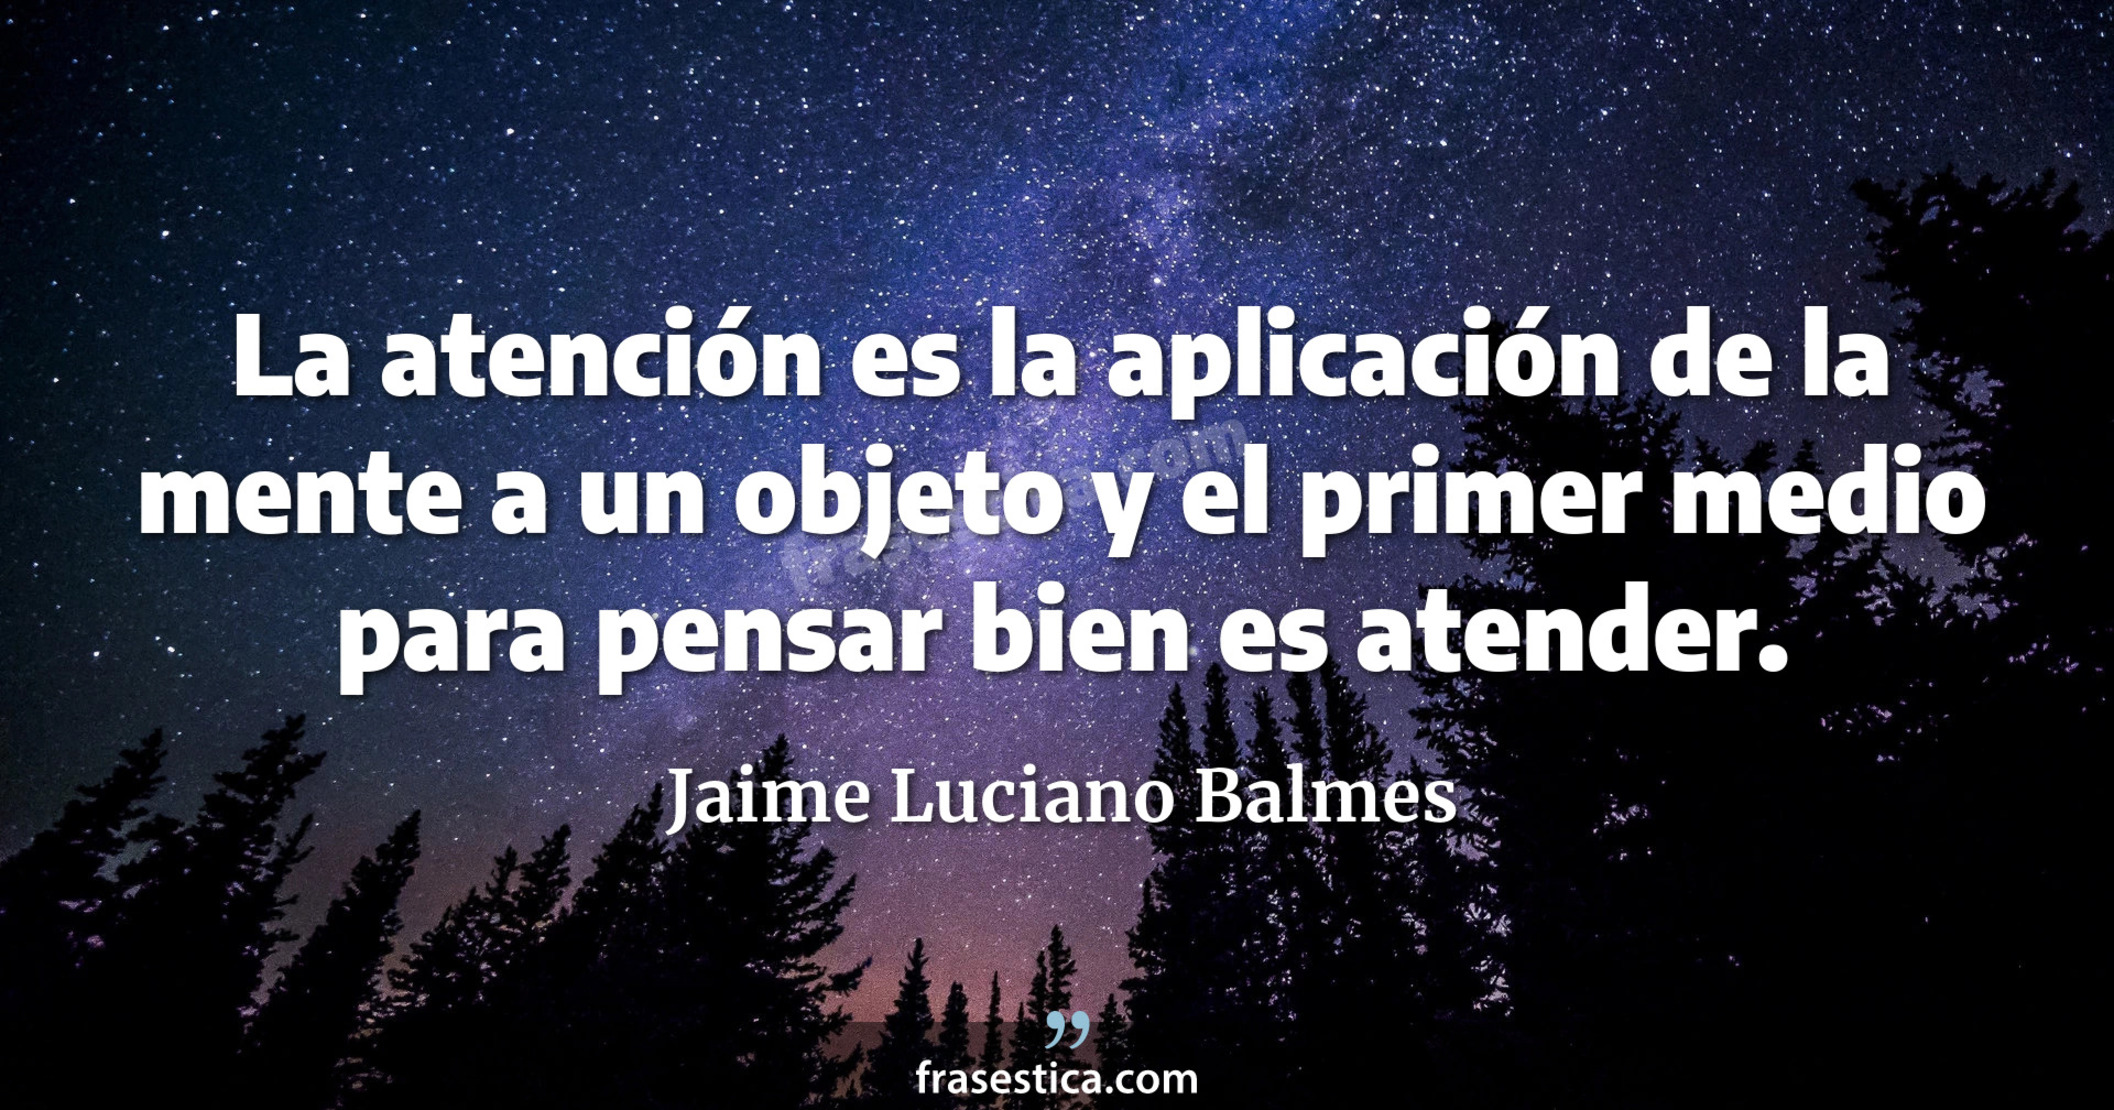 La atención es la aplicación de la mente a un objeto y el primer medio para pensar bien es atender.  - Jaime Luciano Balmes